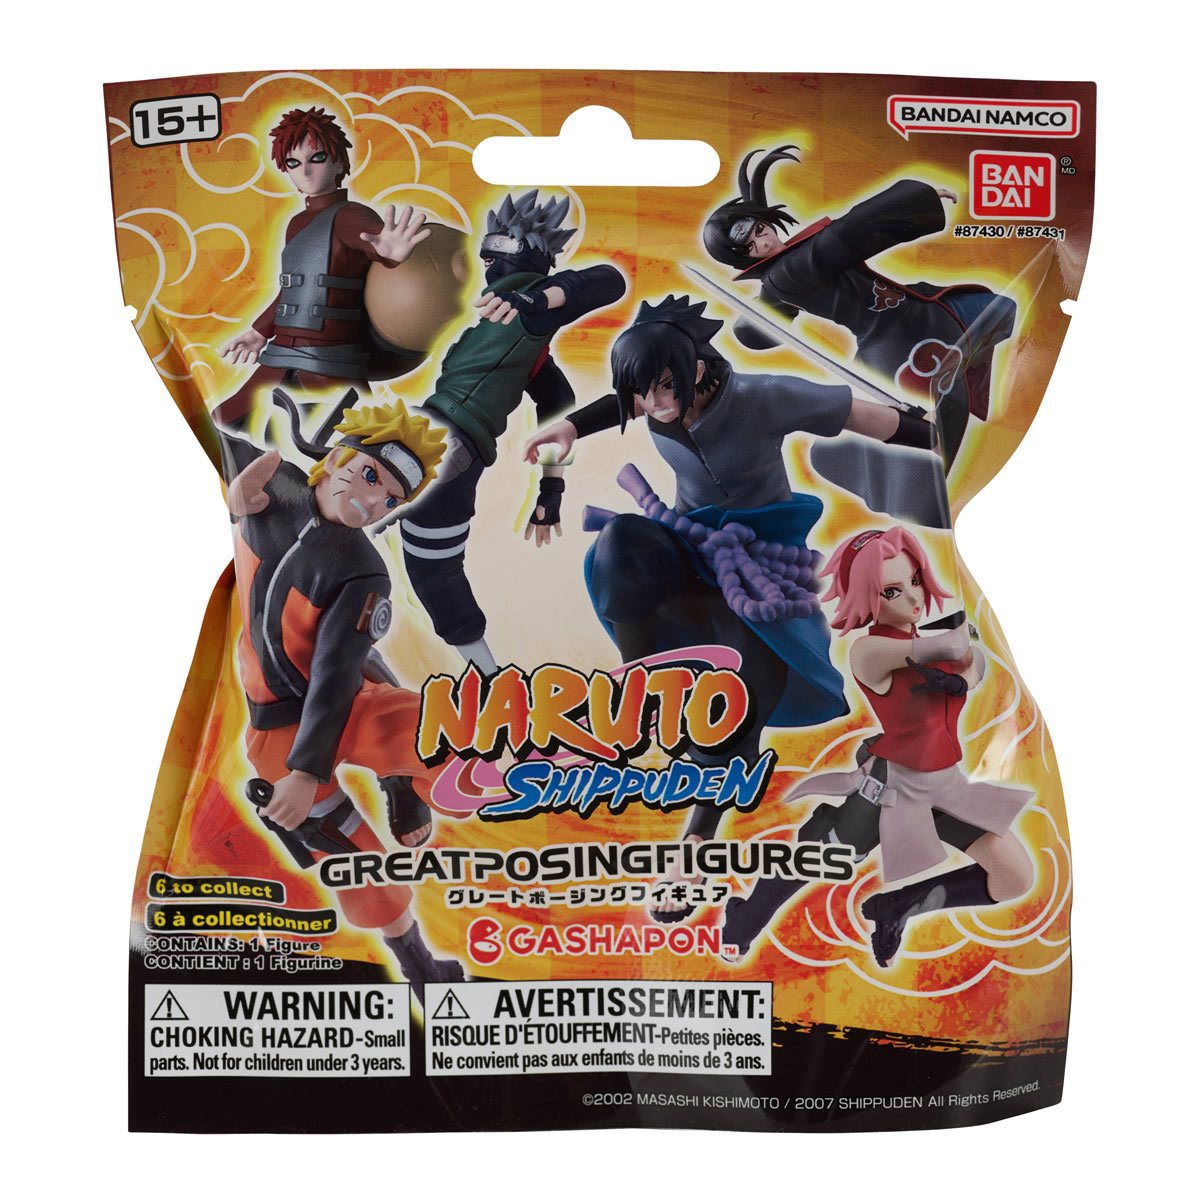 naruto ultimate ninja 5 vs naruto ultimate ninja heroes 3｜TikTok Search